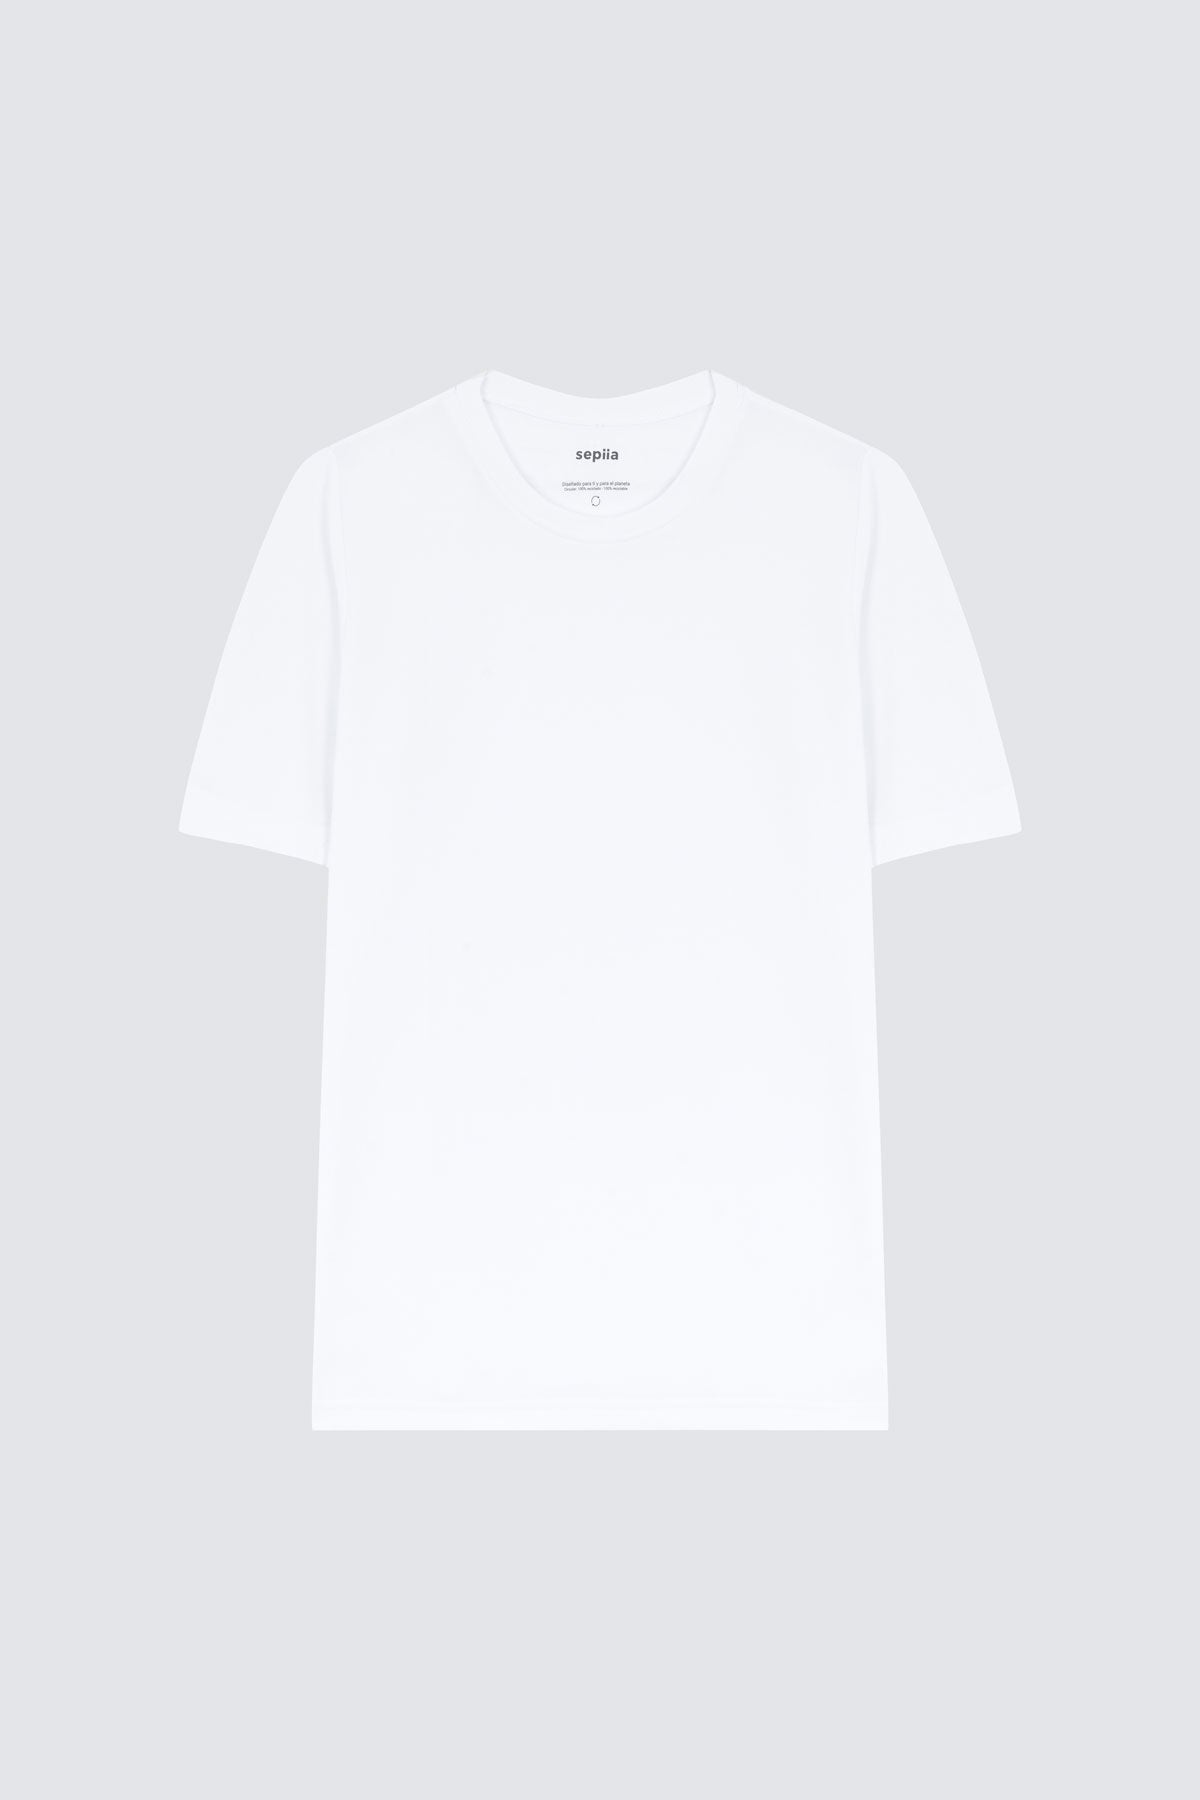 Camiseta de hombre blanca de manga corta, antiarrugas y antimanchas. foto prenda en plano